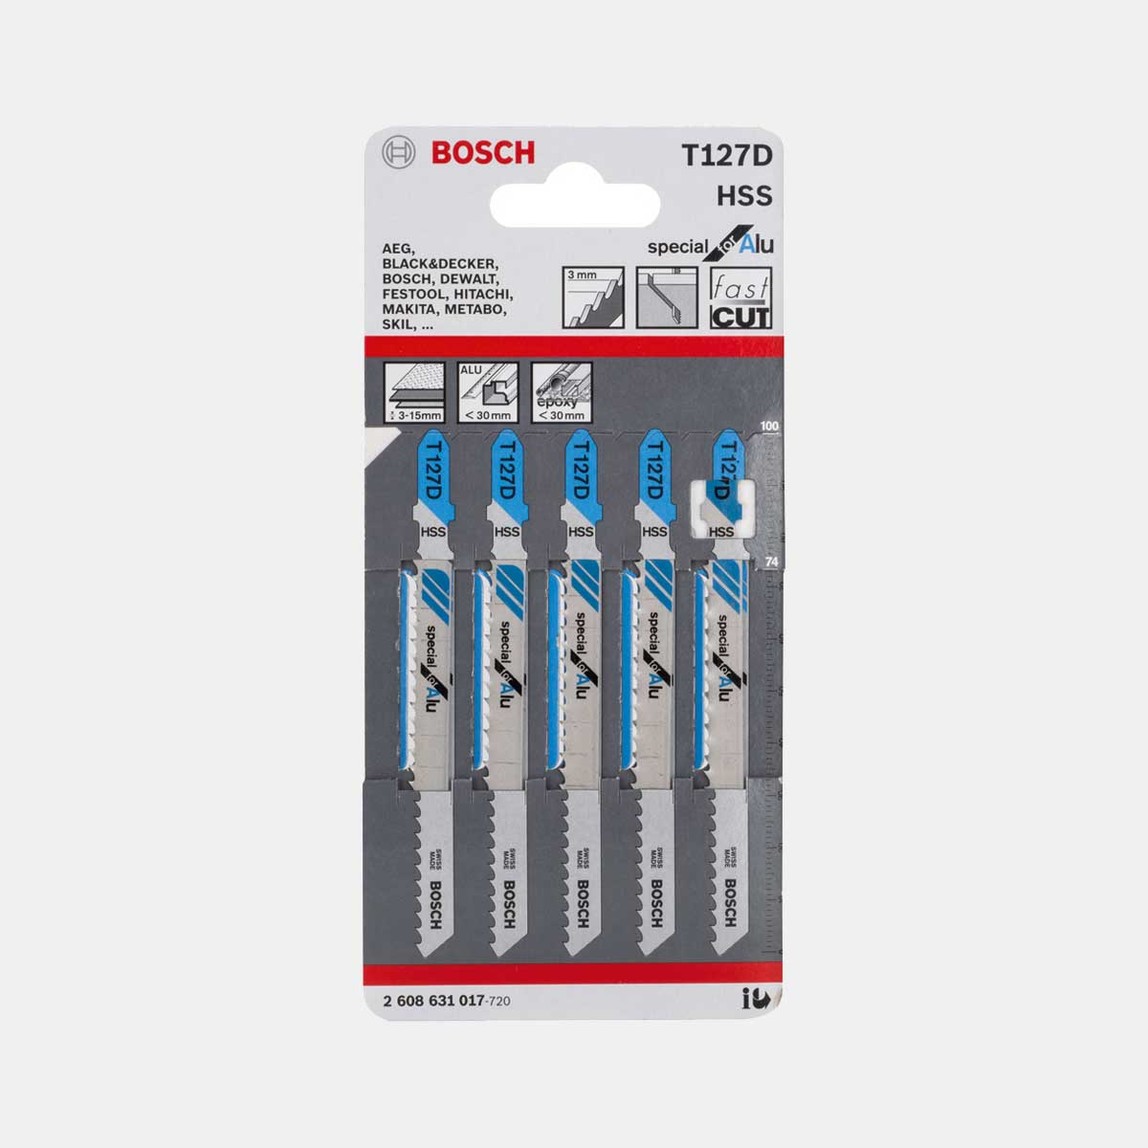    Bosch Dekupaj Testere Bıçağı Alu İçin T127D 5' li 